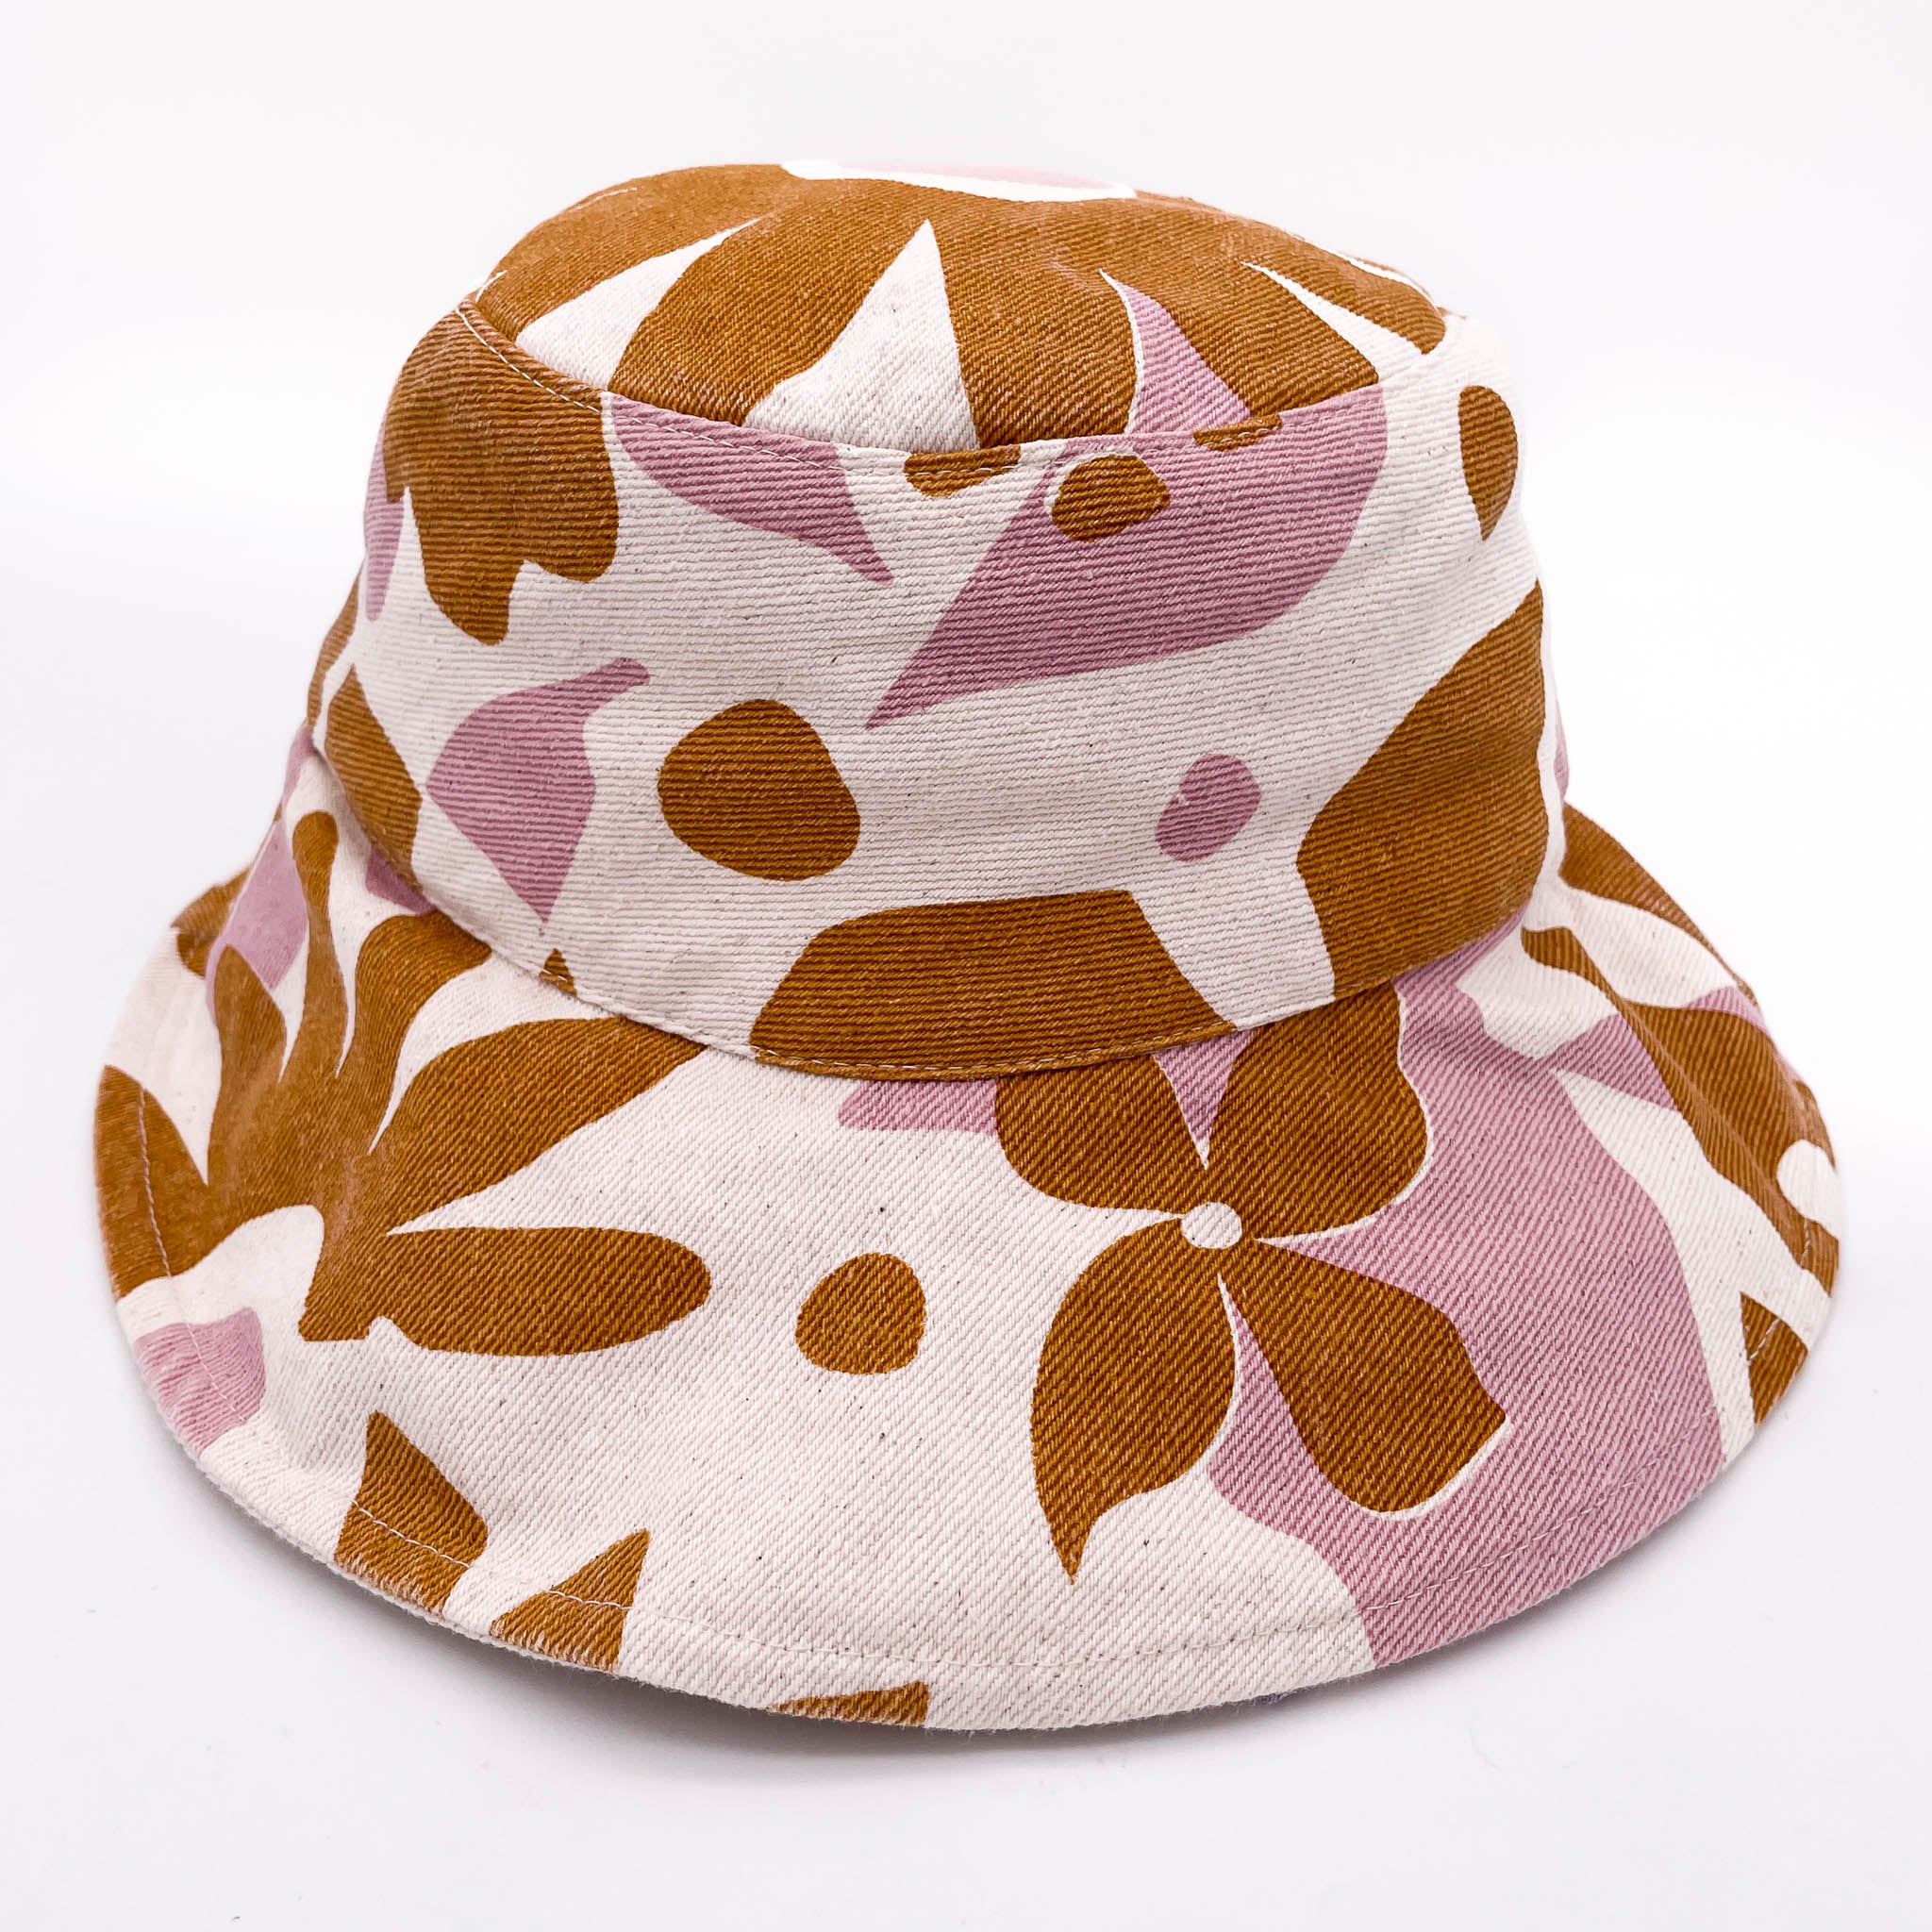 Reversible Denim Bucket Hat - Dusty Pink & Ochre